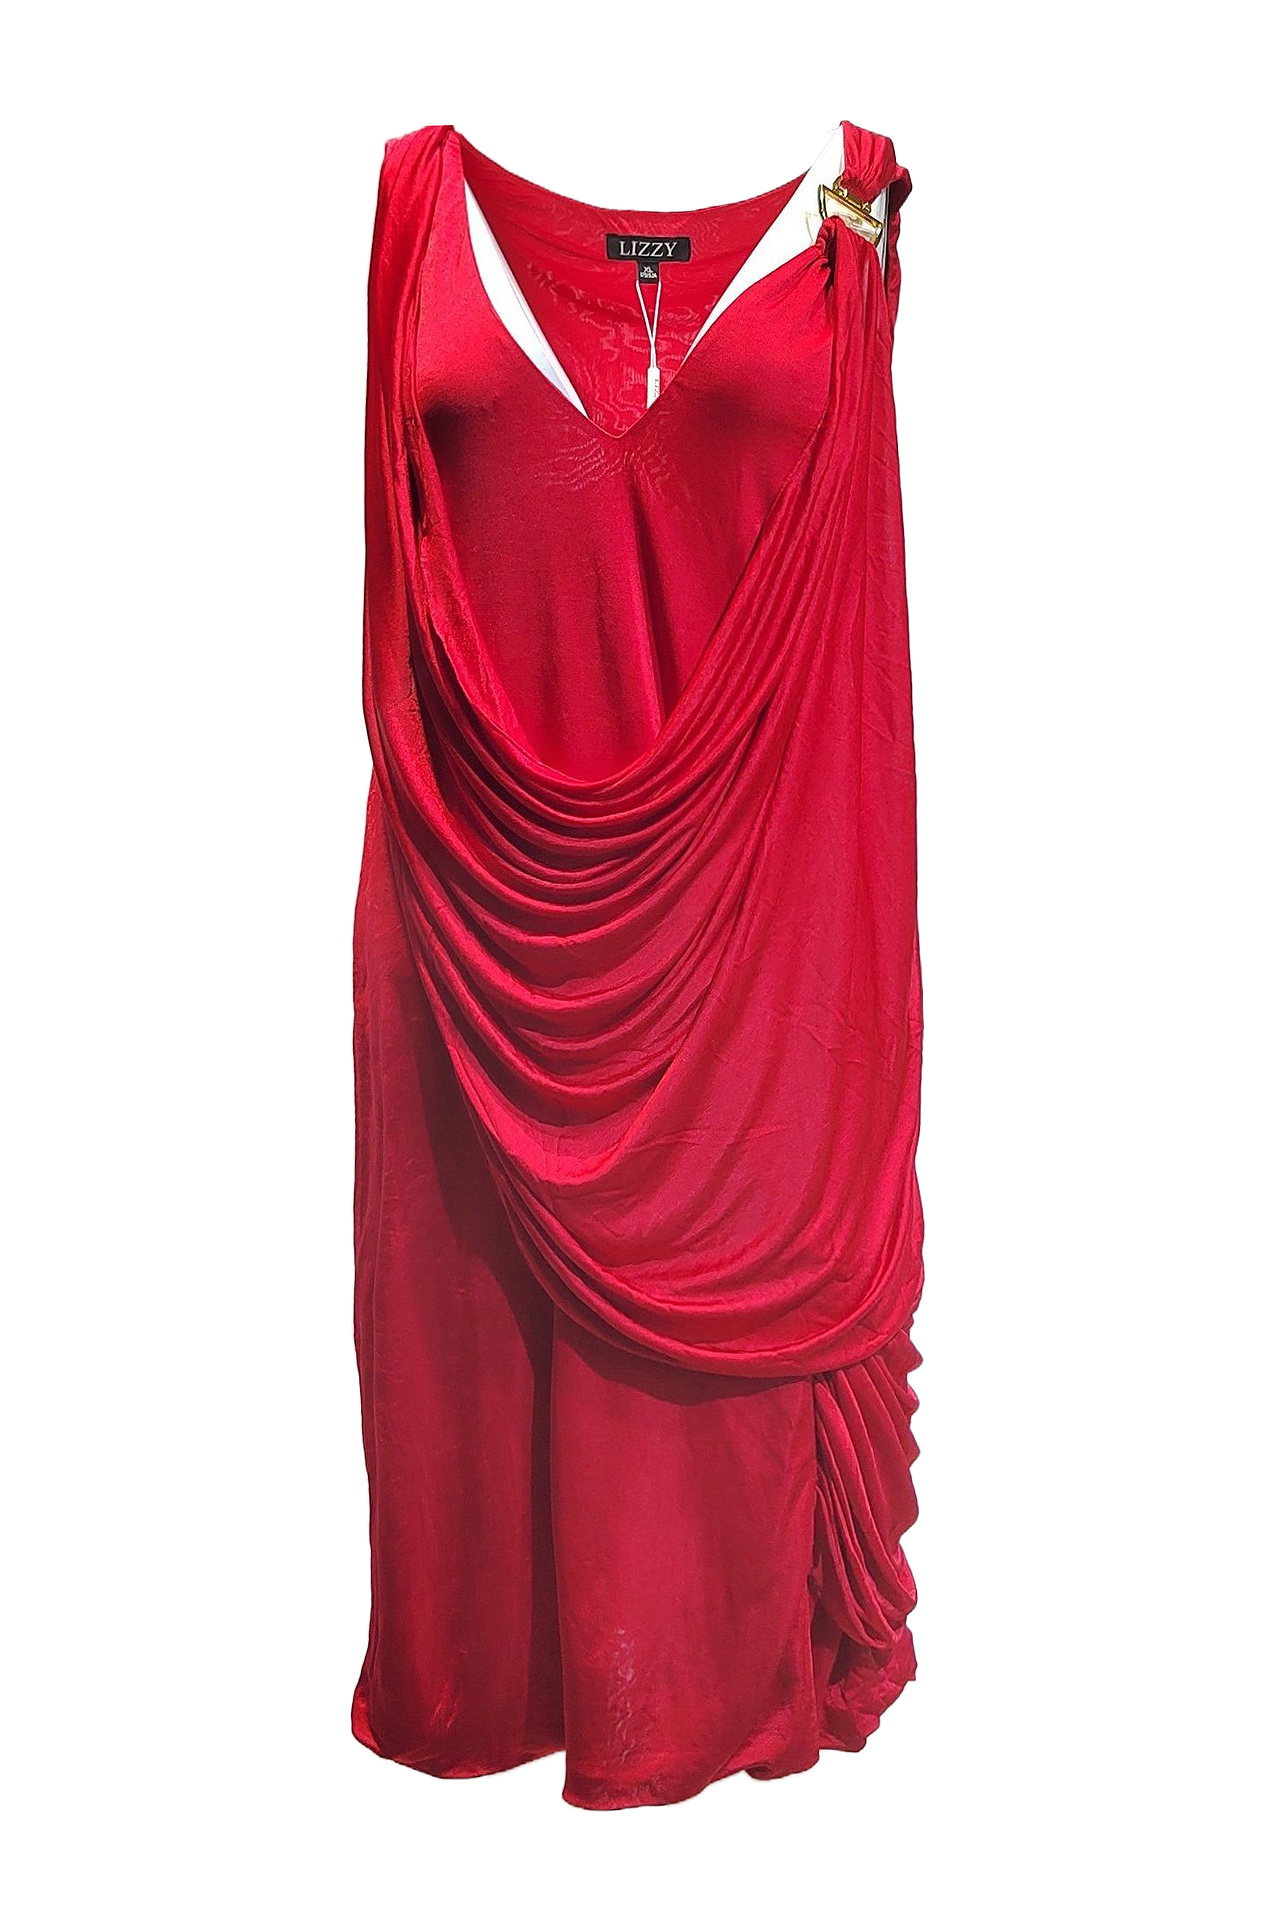 希臘式玫瑰紅垂墜洋裝